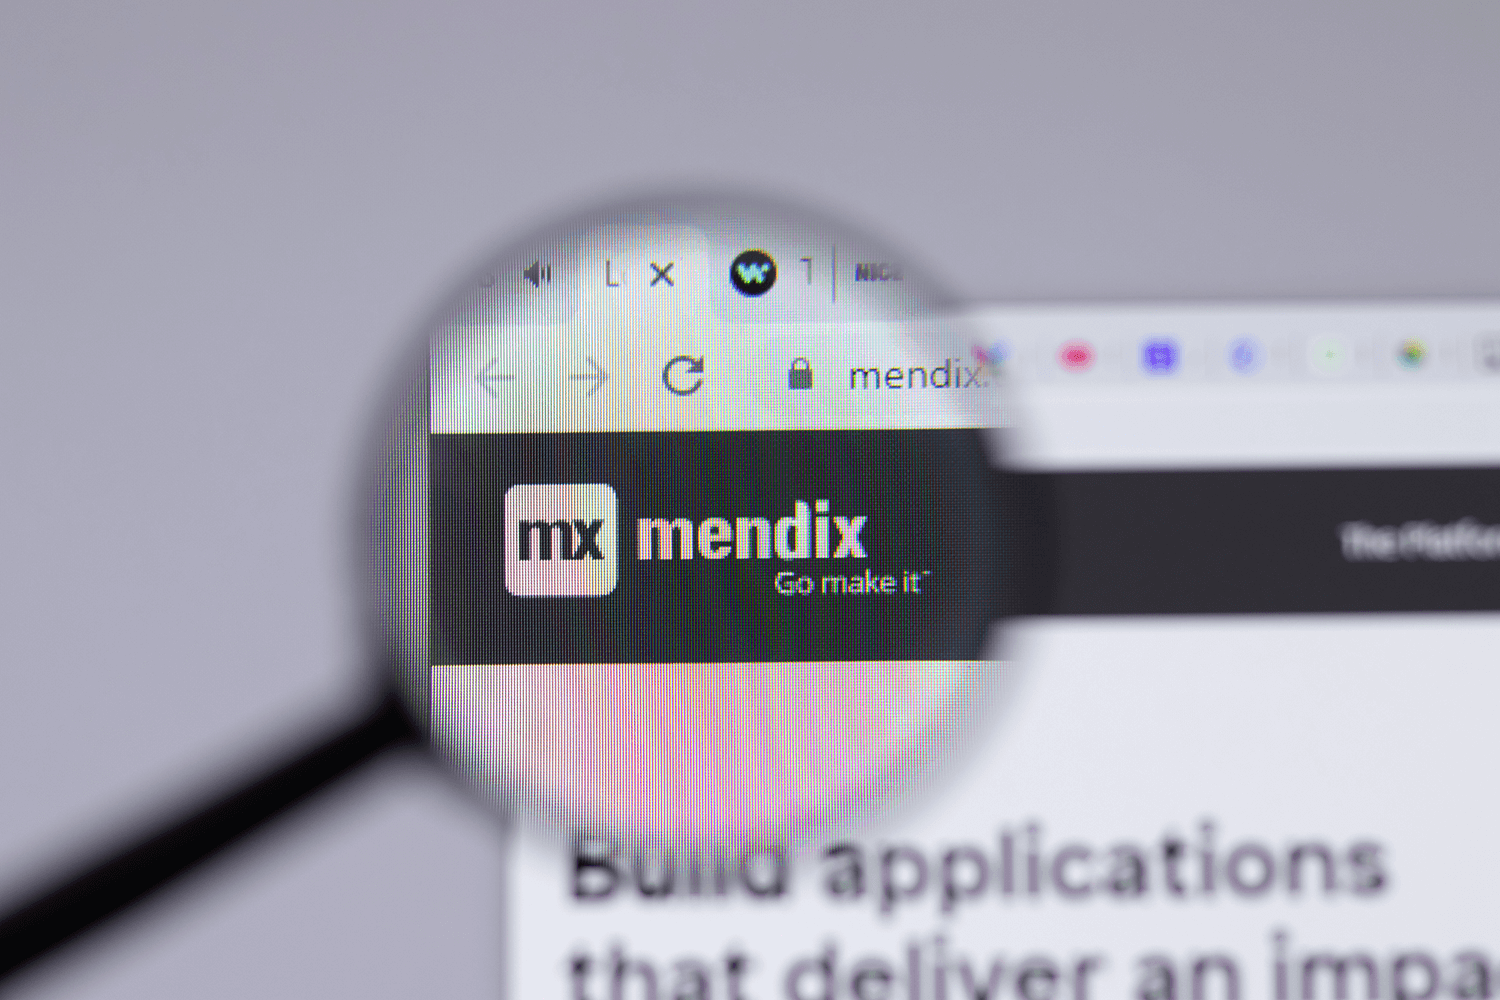 Bouw in 8 stappen zelf een Mendix app